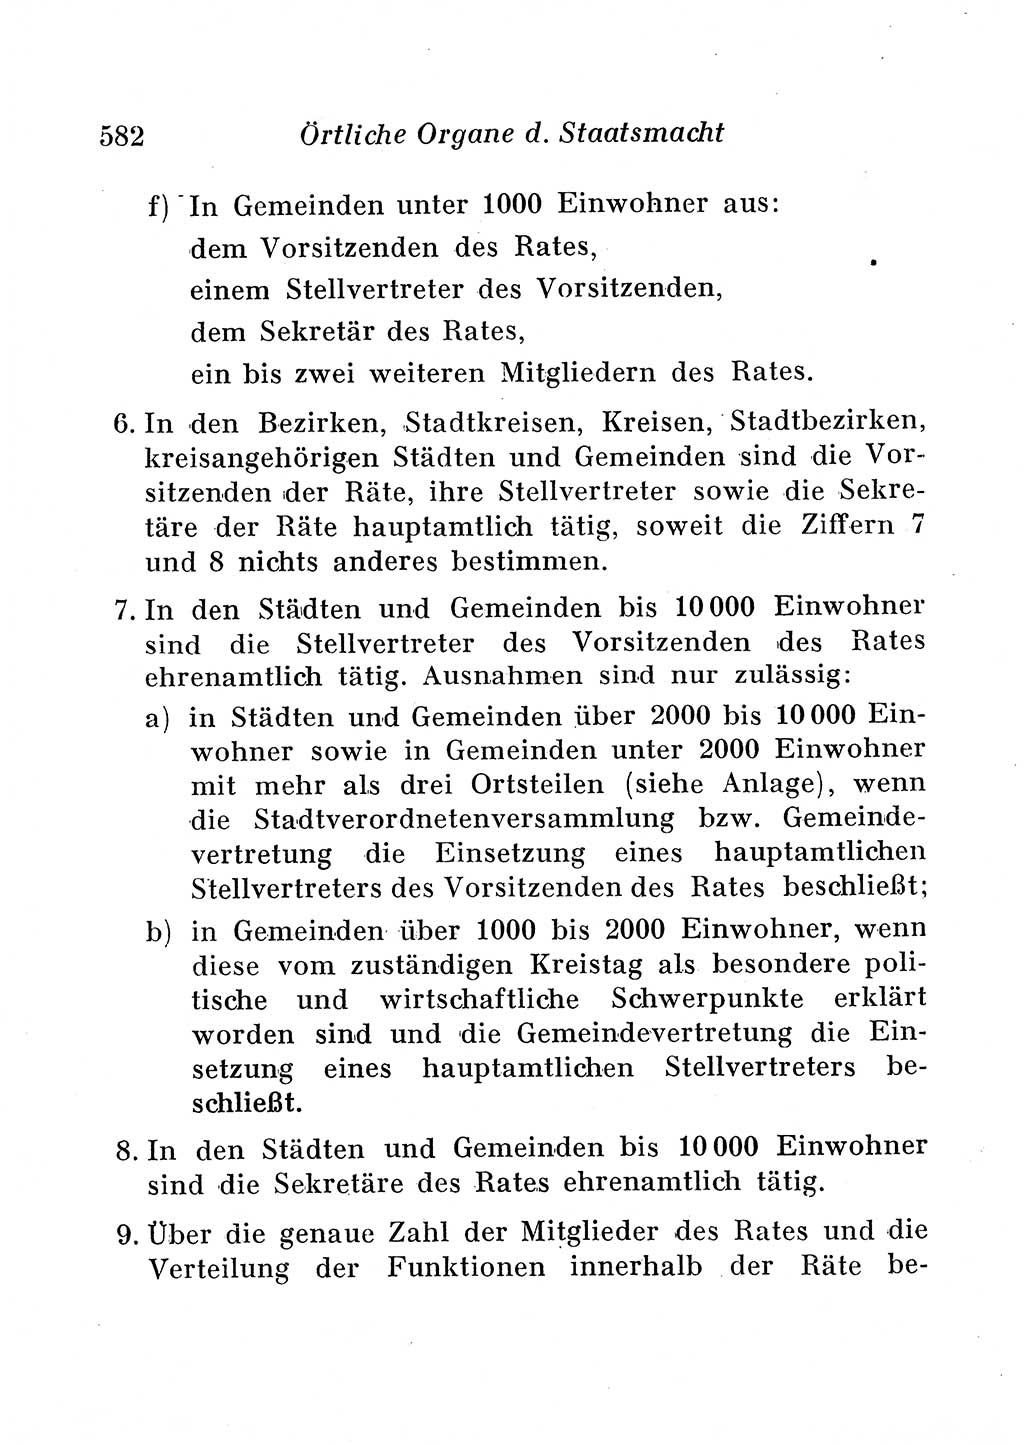 Staats- und verwaltungsrechtliche Gesetze der Deutschen Demokratischen Republik (DDR) 1958, Seite 582 (StVerwR Ges. DDR 1958, S. 582)